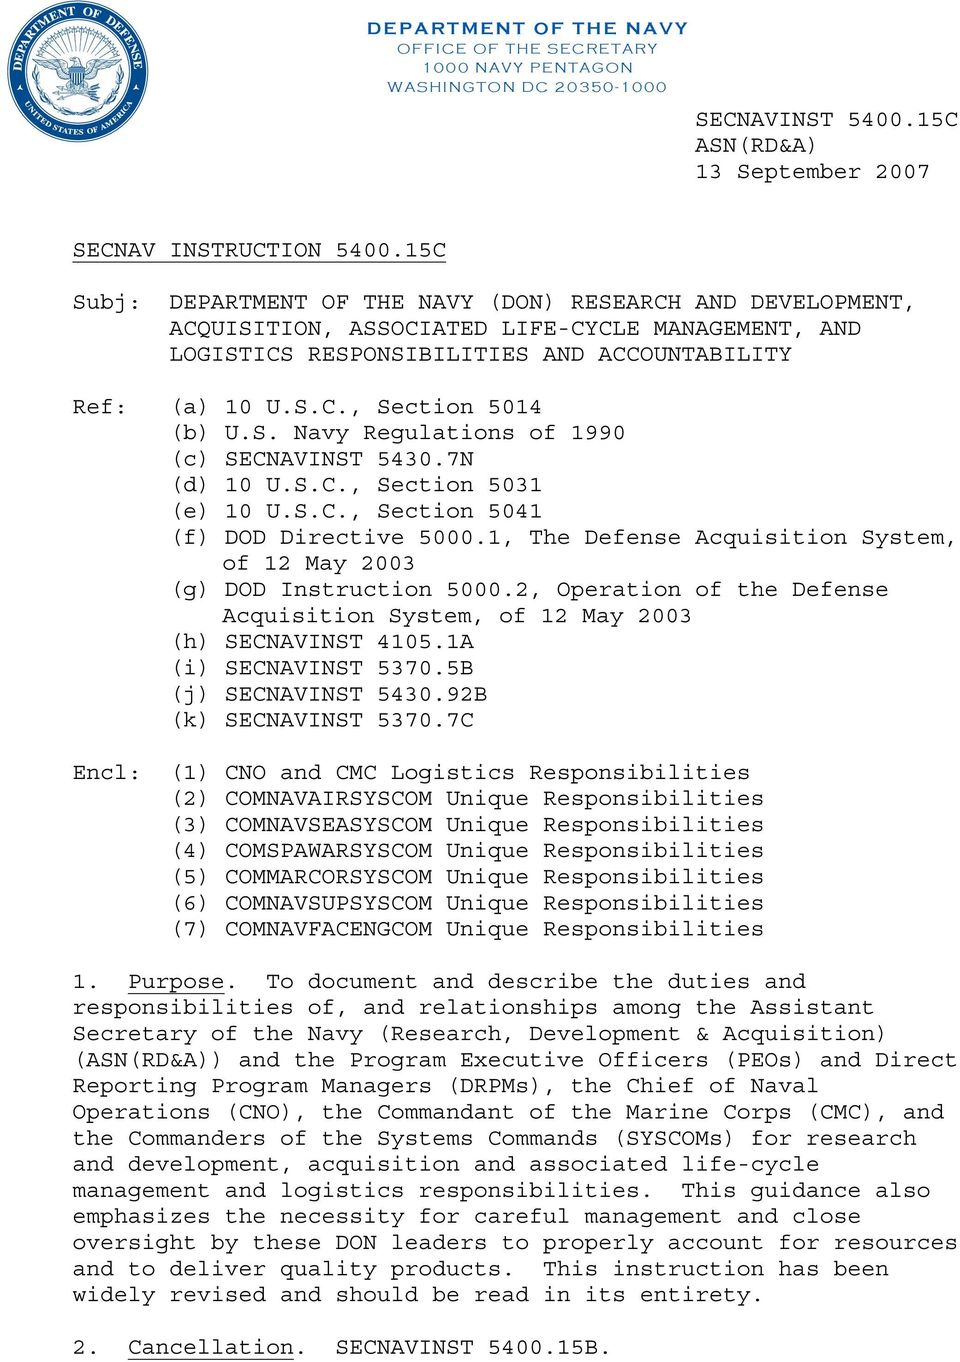 S. Navy Regulations of 1990 (c) SECNAVINST 5430.7N (d) 10 U.S.C., Section 5031 (e) 10 U.S.C., Section 5041 (f) DOD Directive 5000.